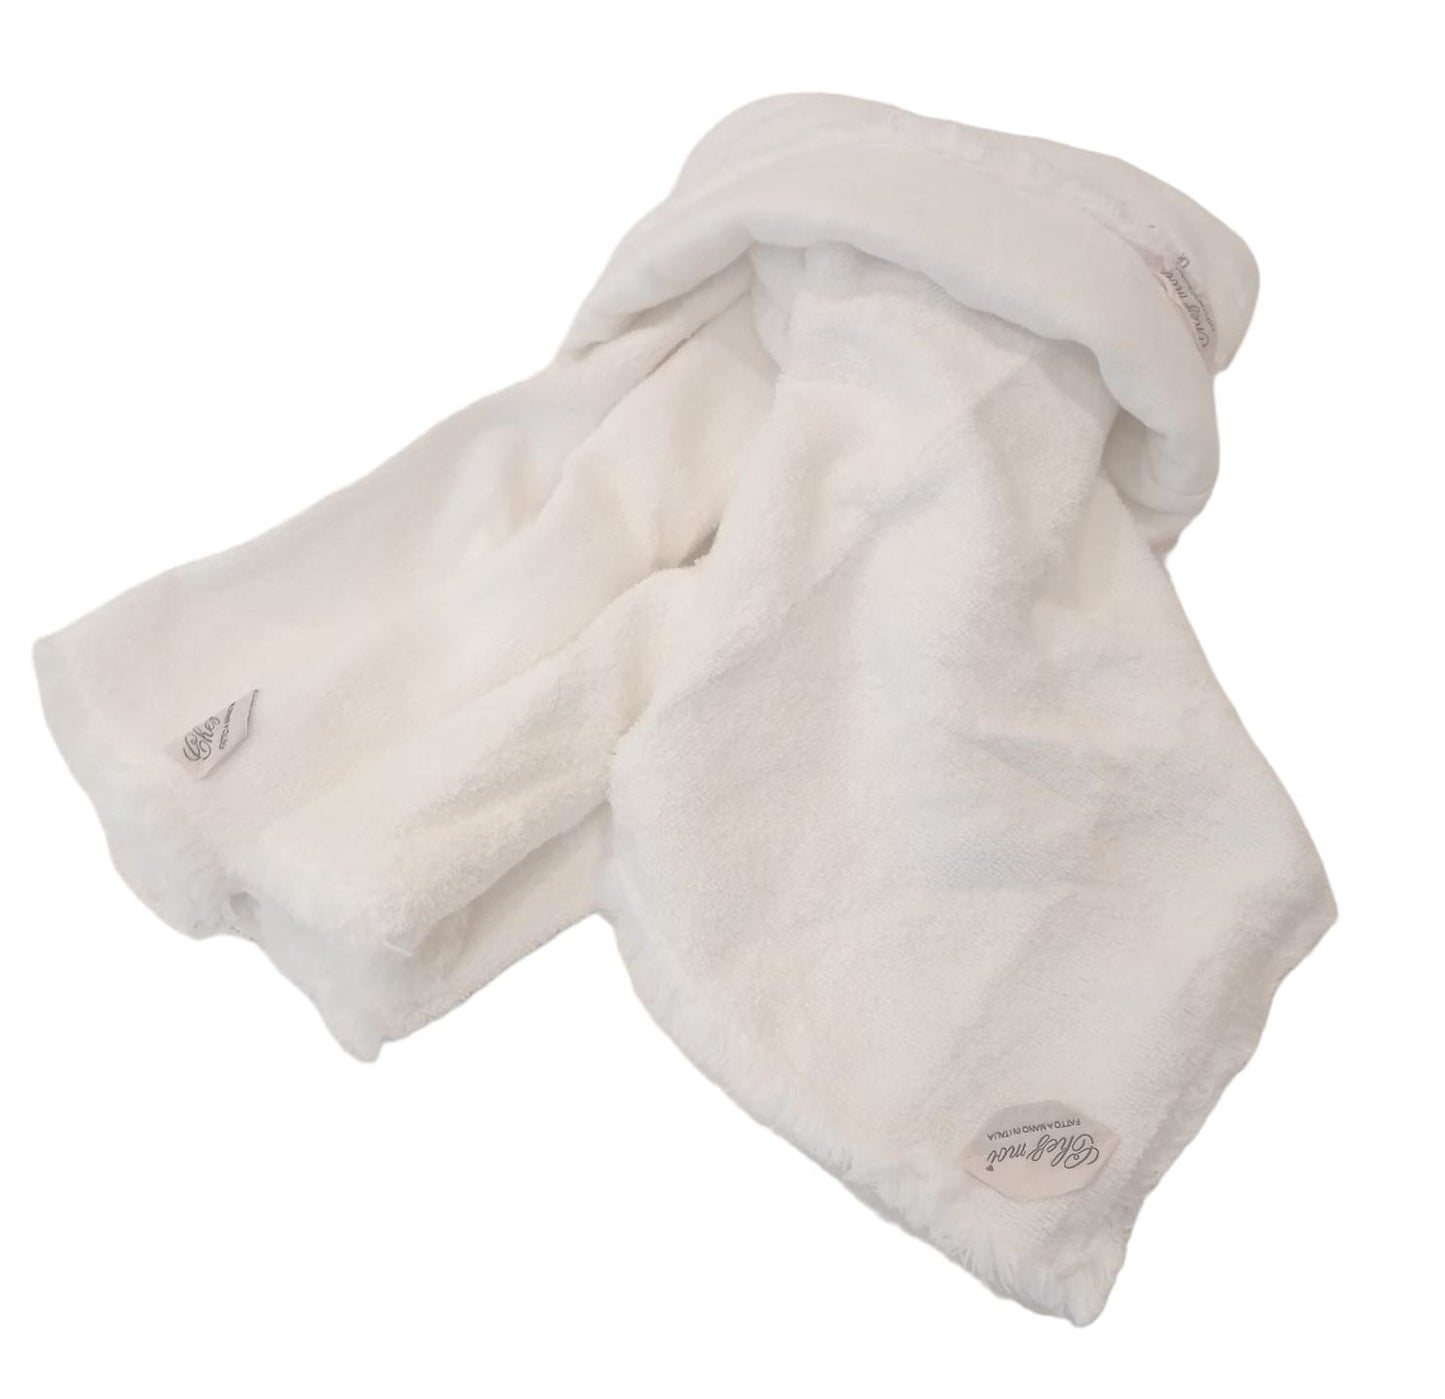 Lavette set da 3 asciugamani bagno con elegante sacchetto di lino, colore: Bianco, tessuti pregiati, 100% Made in Italy - Chez Moi